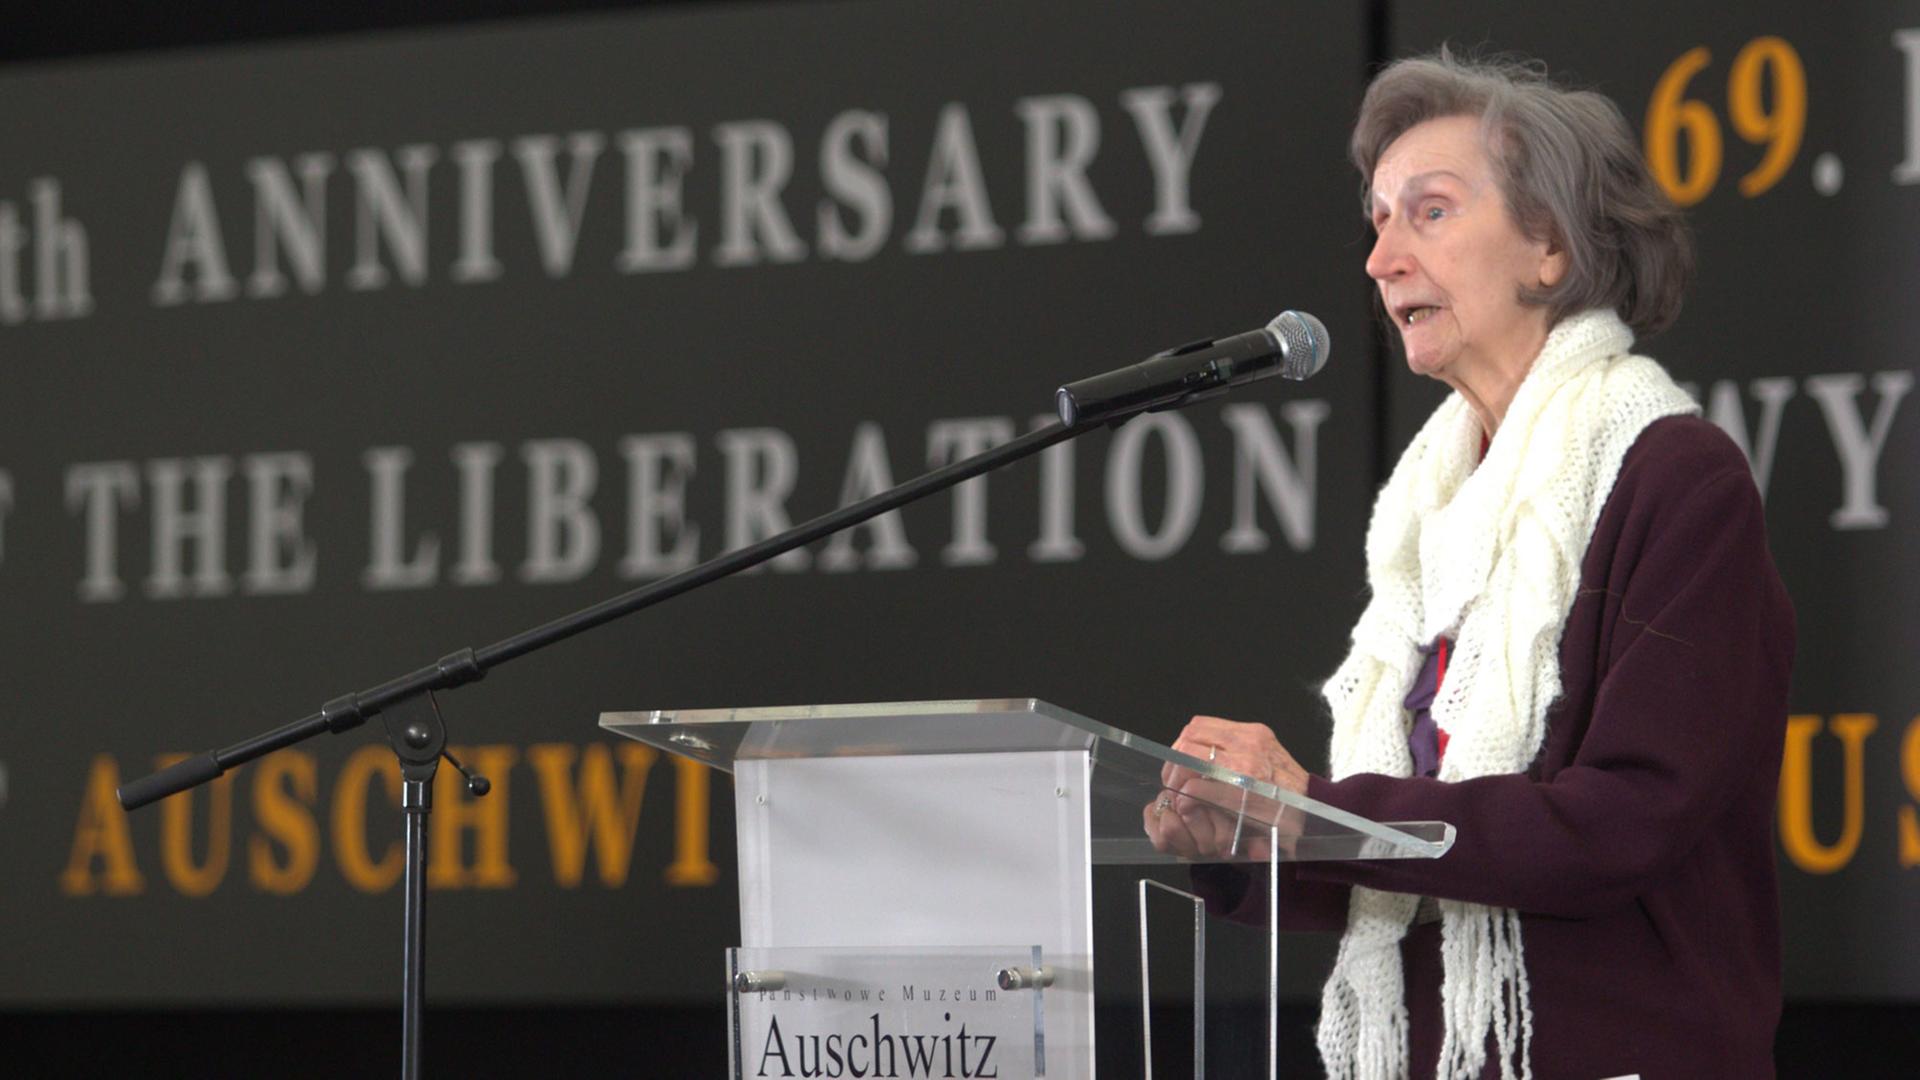 Die polnische Autorin und Auschwitz-Überlebende Zofia Posmysz spricht am 27.1.2014 bei einer Gedenkveranstaltung zum 69. Jahrestag der Befreiung des Konzentrations- und Vernichtungslagers.